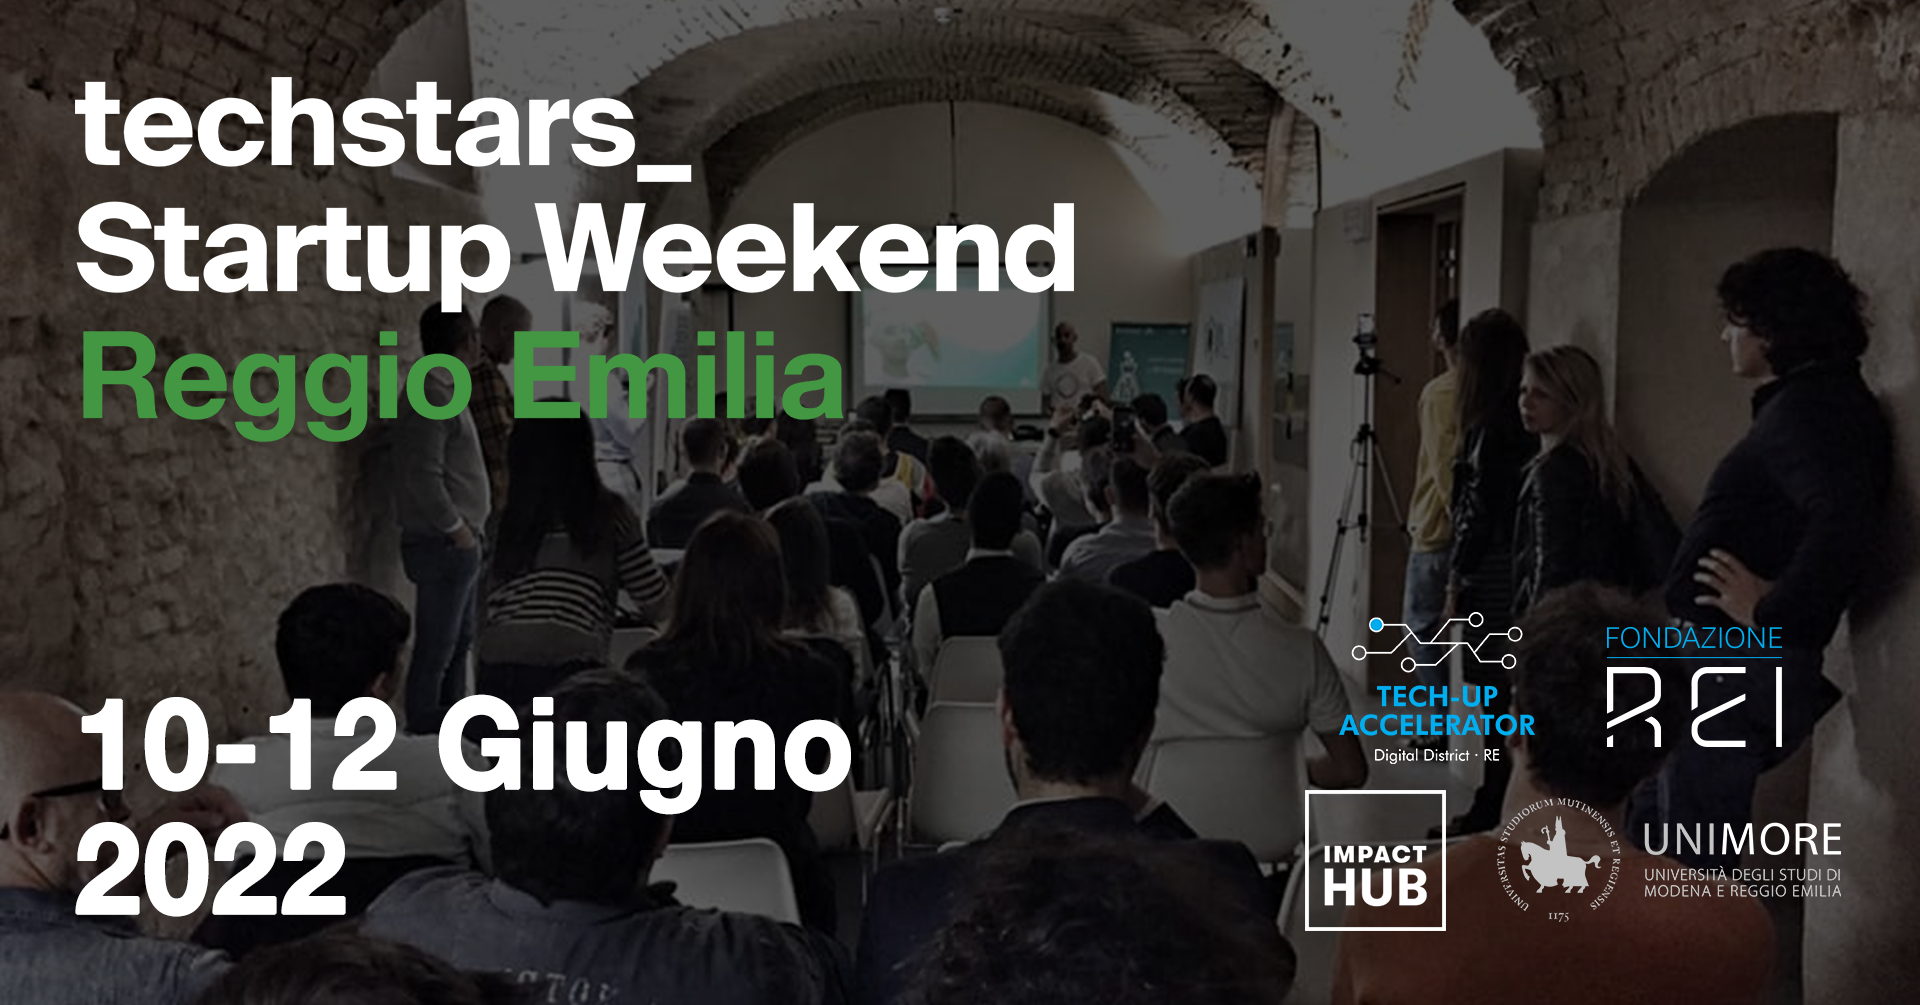 Techstars Startup Weekend Reggio Emilia